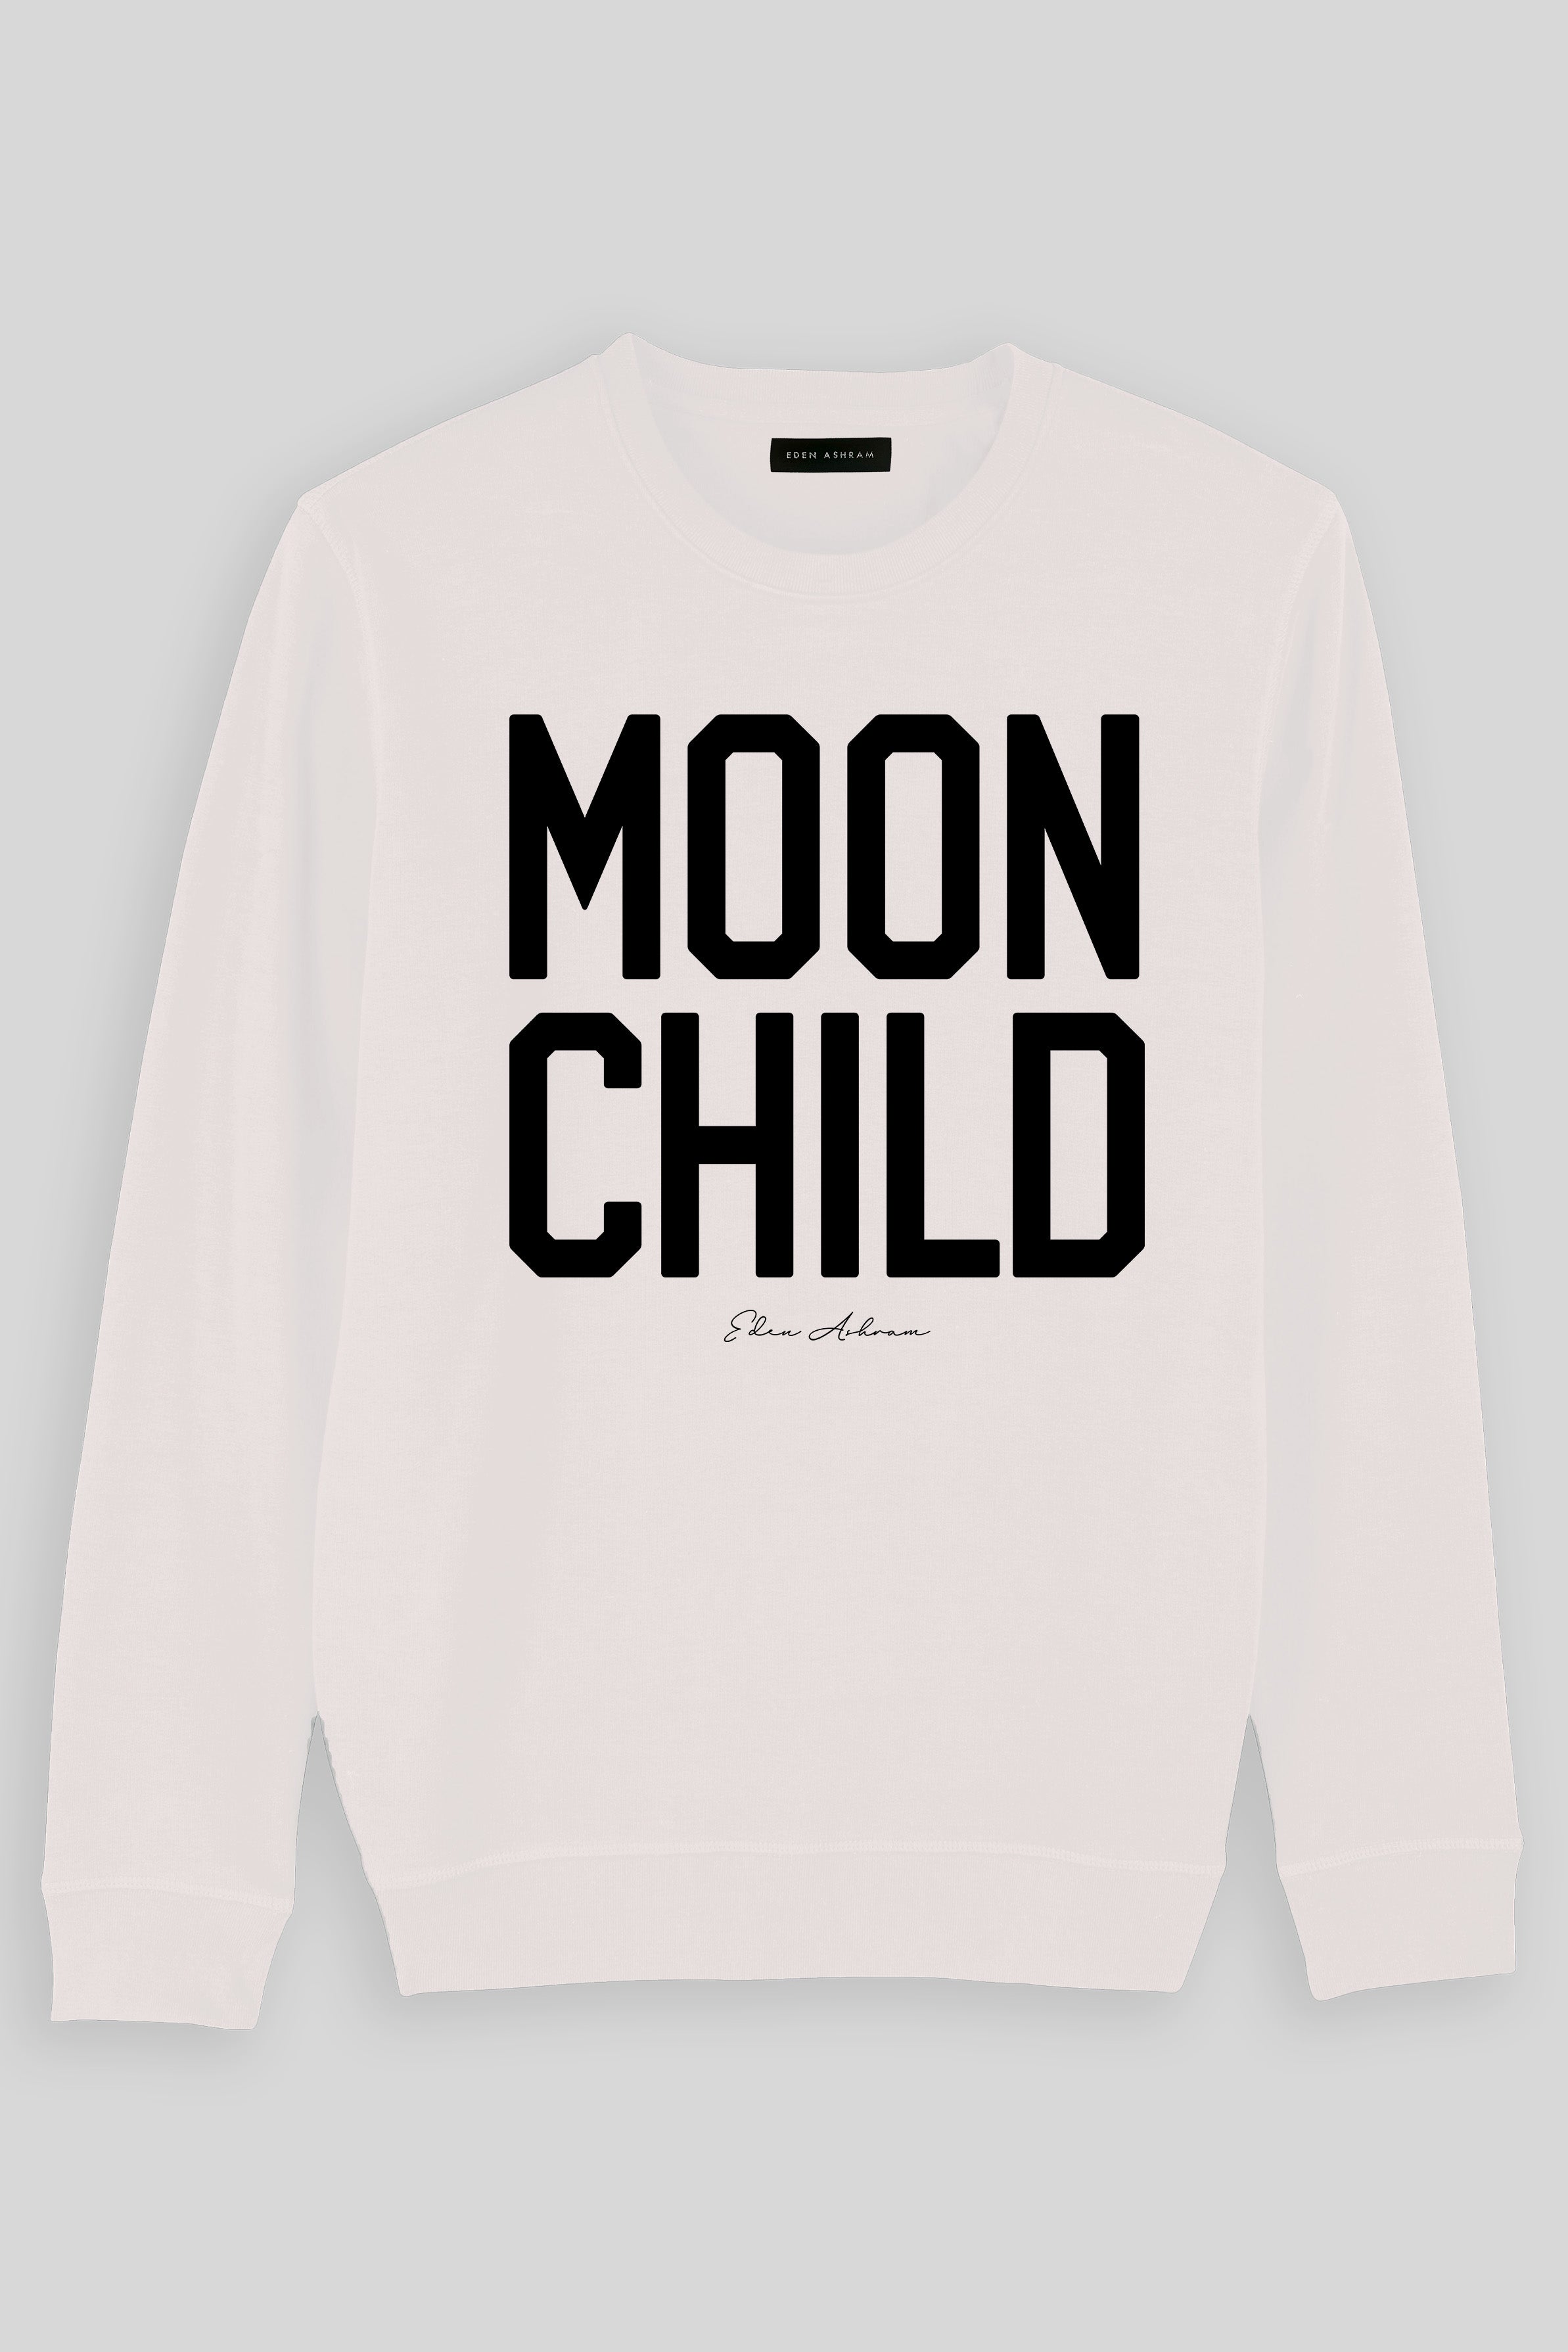 Eden Ashram Moon Child Premium Crew Neck Sweatshirt Vintage White